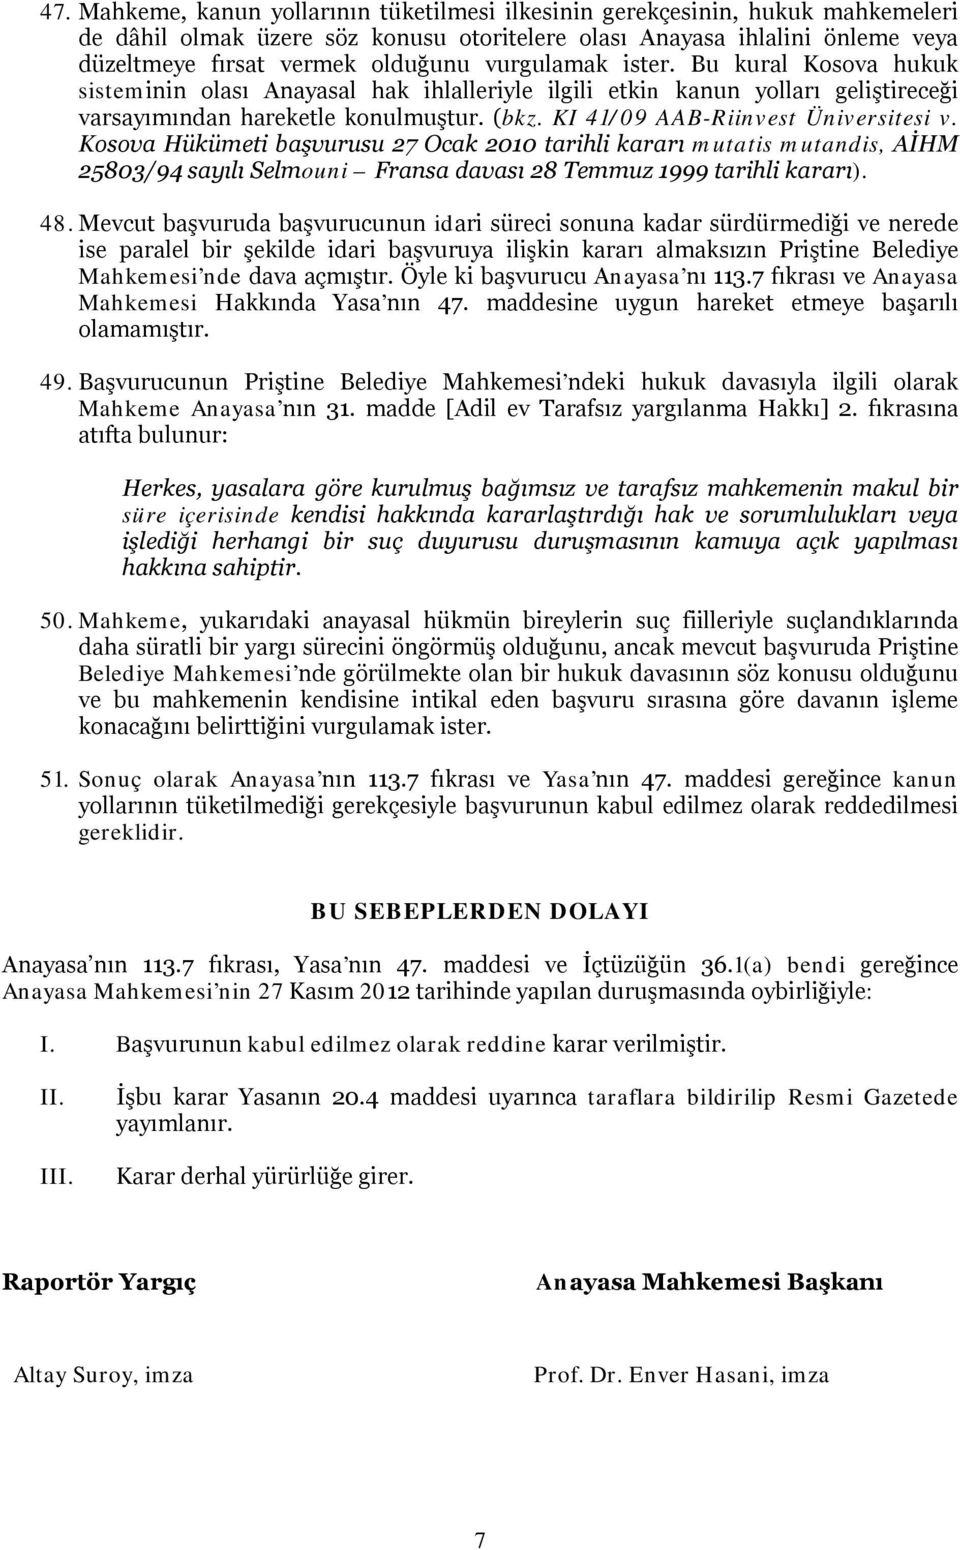 KI 41/09 AAB-Riinvest Üniversitesi v. Kosova Hükümeti başvurusu 27 Ocak 2010 tarihli kararı mutatis mutandis, AİHM 25803/94 sayılı Selmouni Fransa davası 28 Temmuz 1999 tarihli kararı). 48.